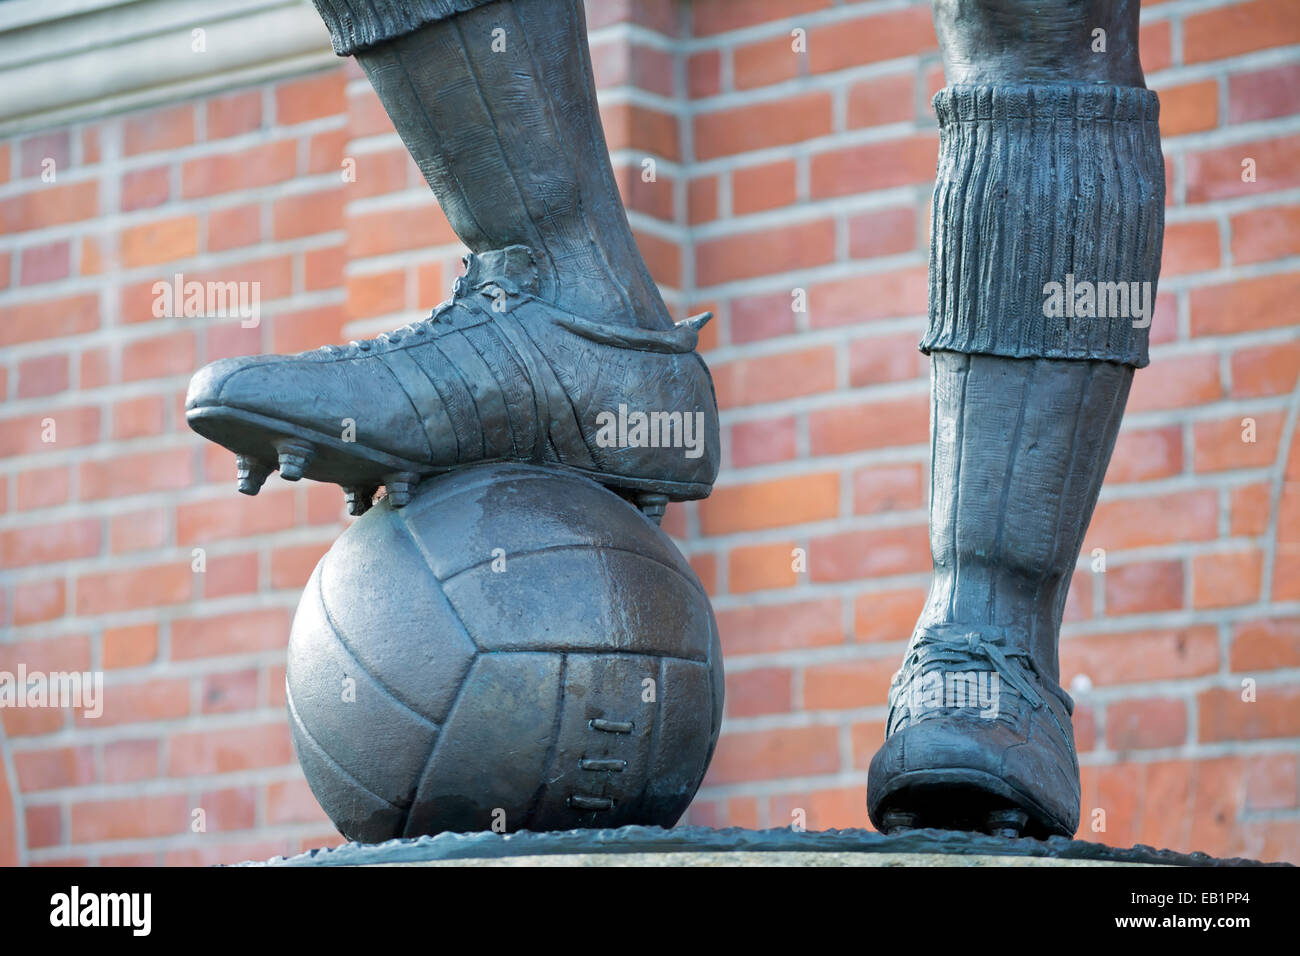 Dettaglio della statua di douglas jennings di Fulham e calciatore inglese johnny haynes, Craven Cottage, Fulham, Londra, Inghilterra Foto Stock